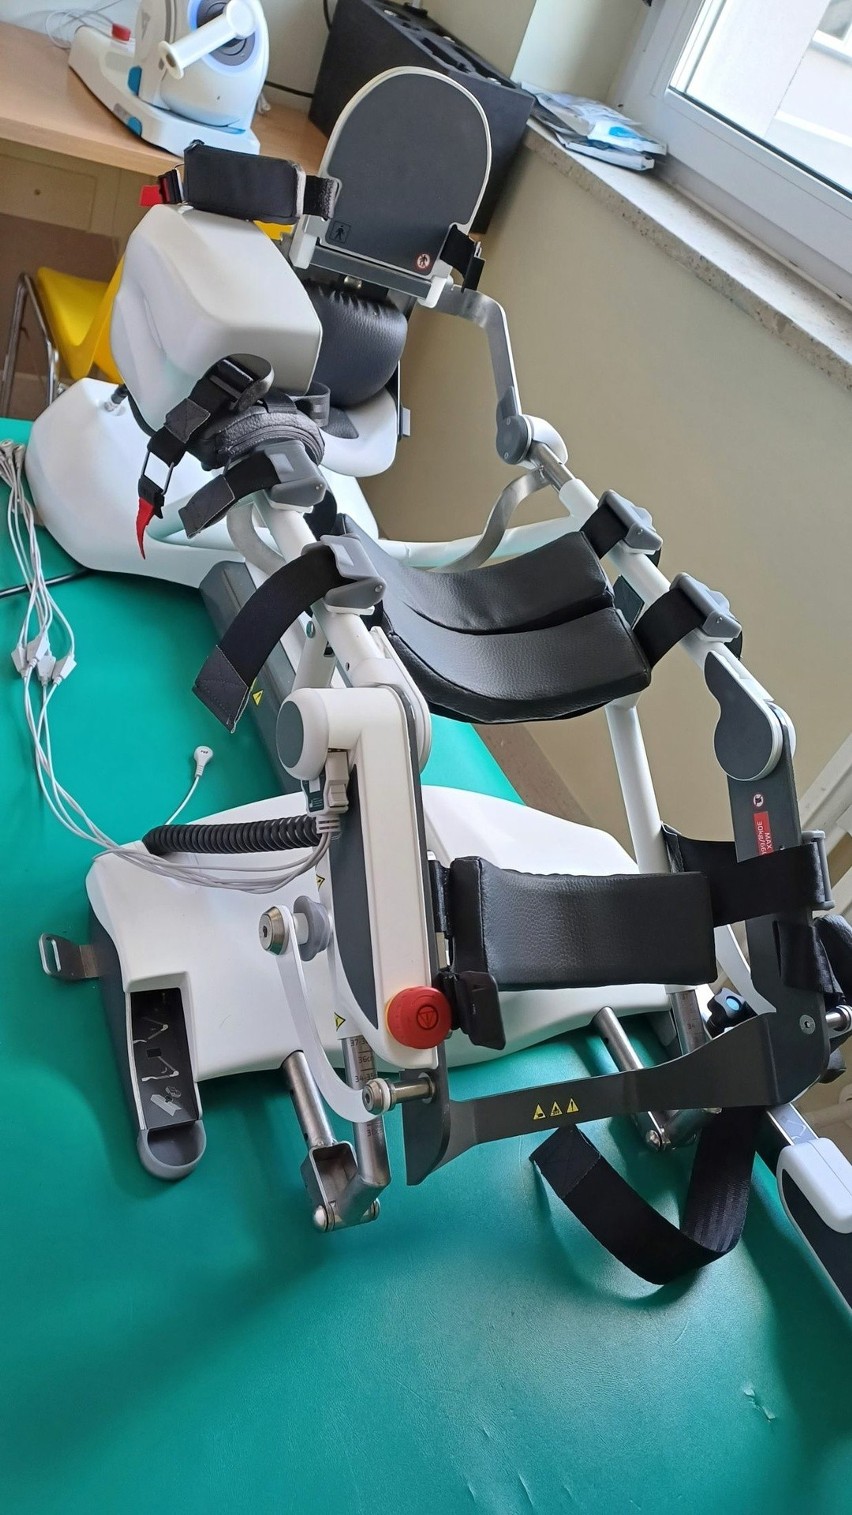 Trzy roboty wspomagające rehabilitację w starachowickim szpitalu. Zobacz zdjęcia